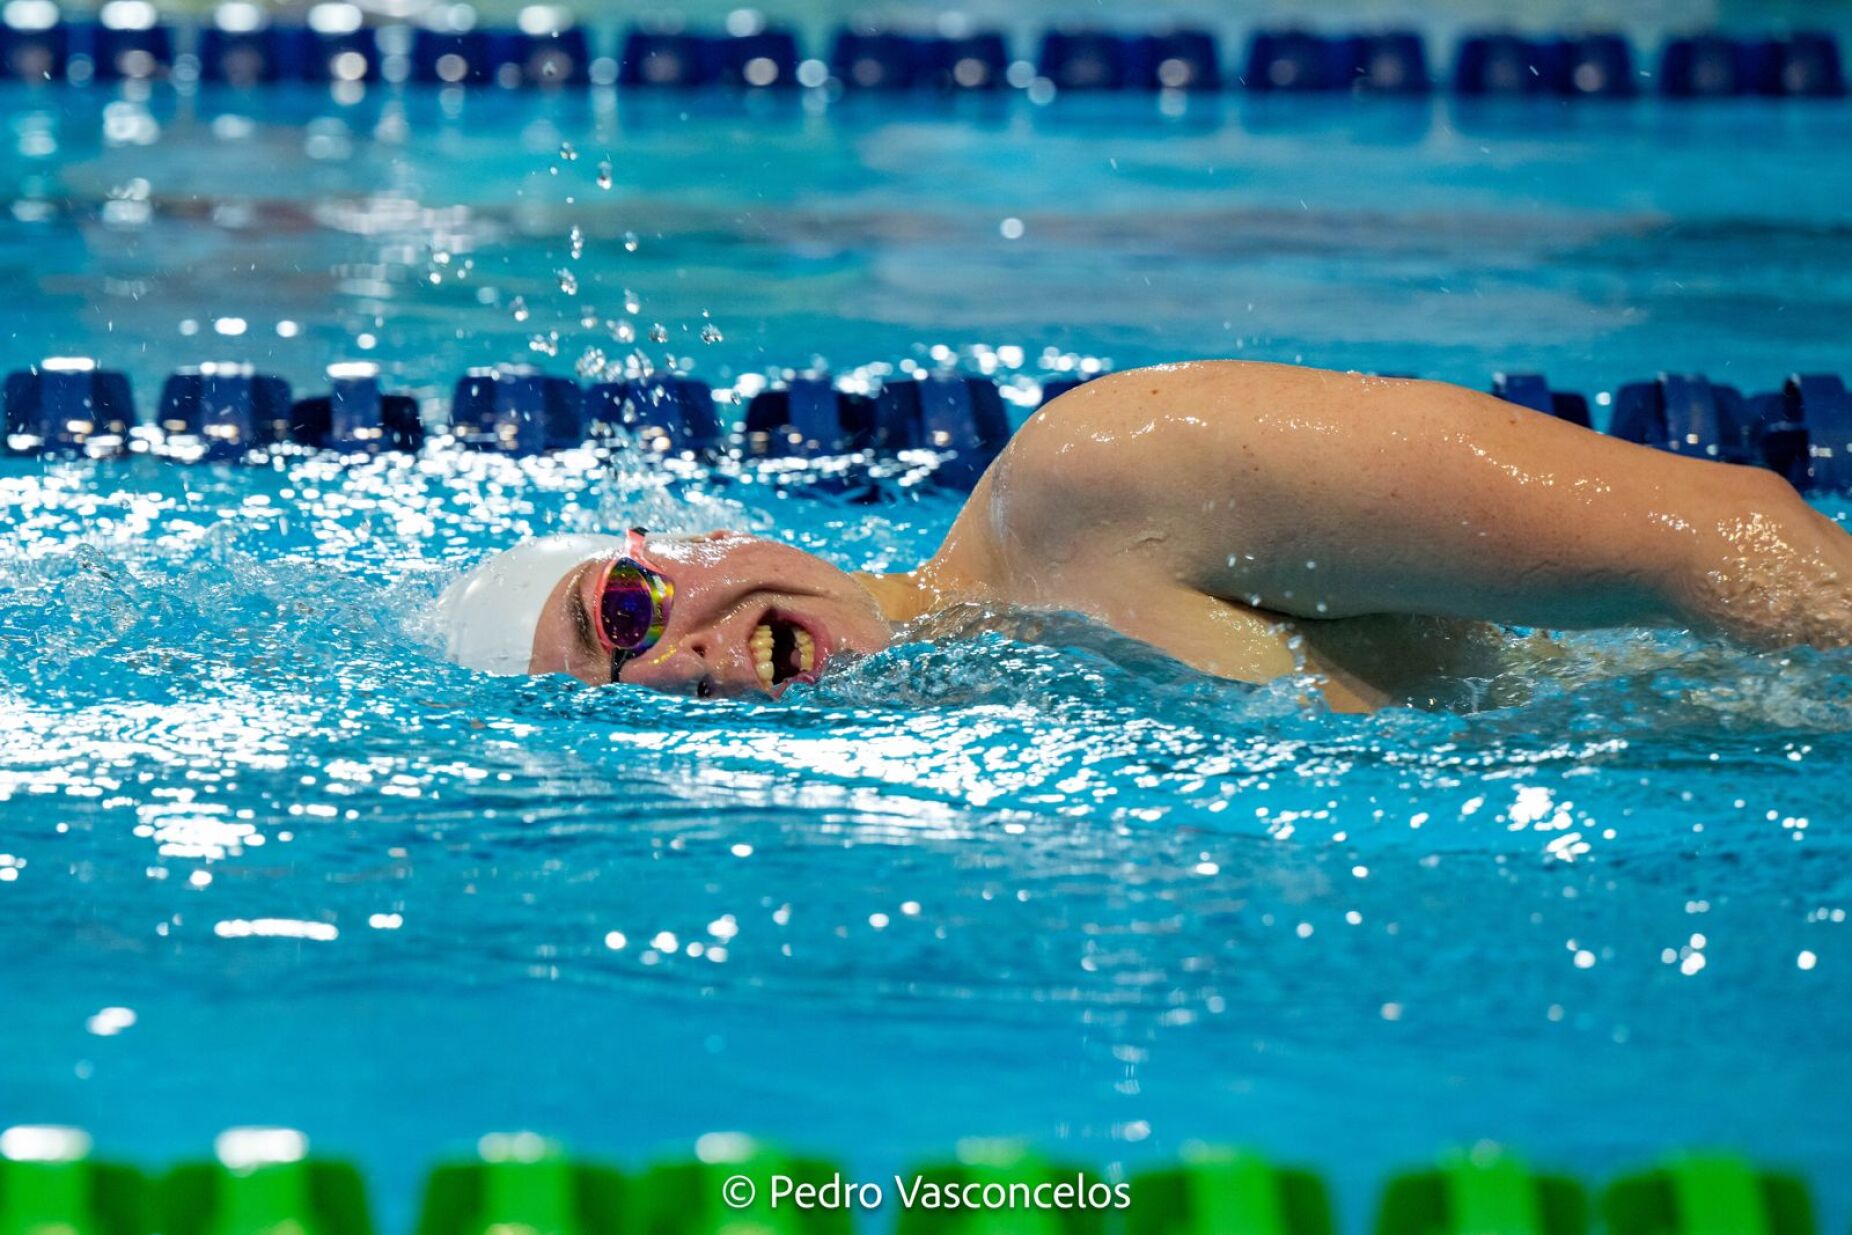 Europeus de natação paralímpica: "Objetivo é que todos consigam finais"